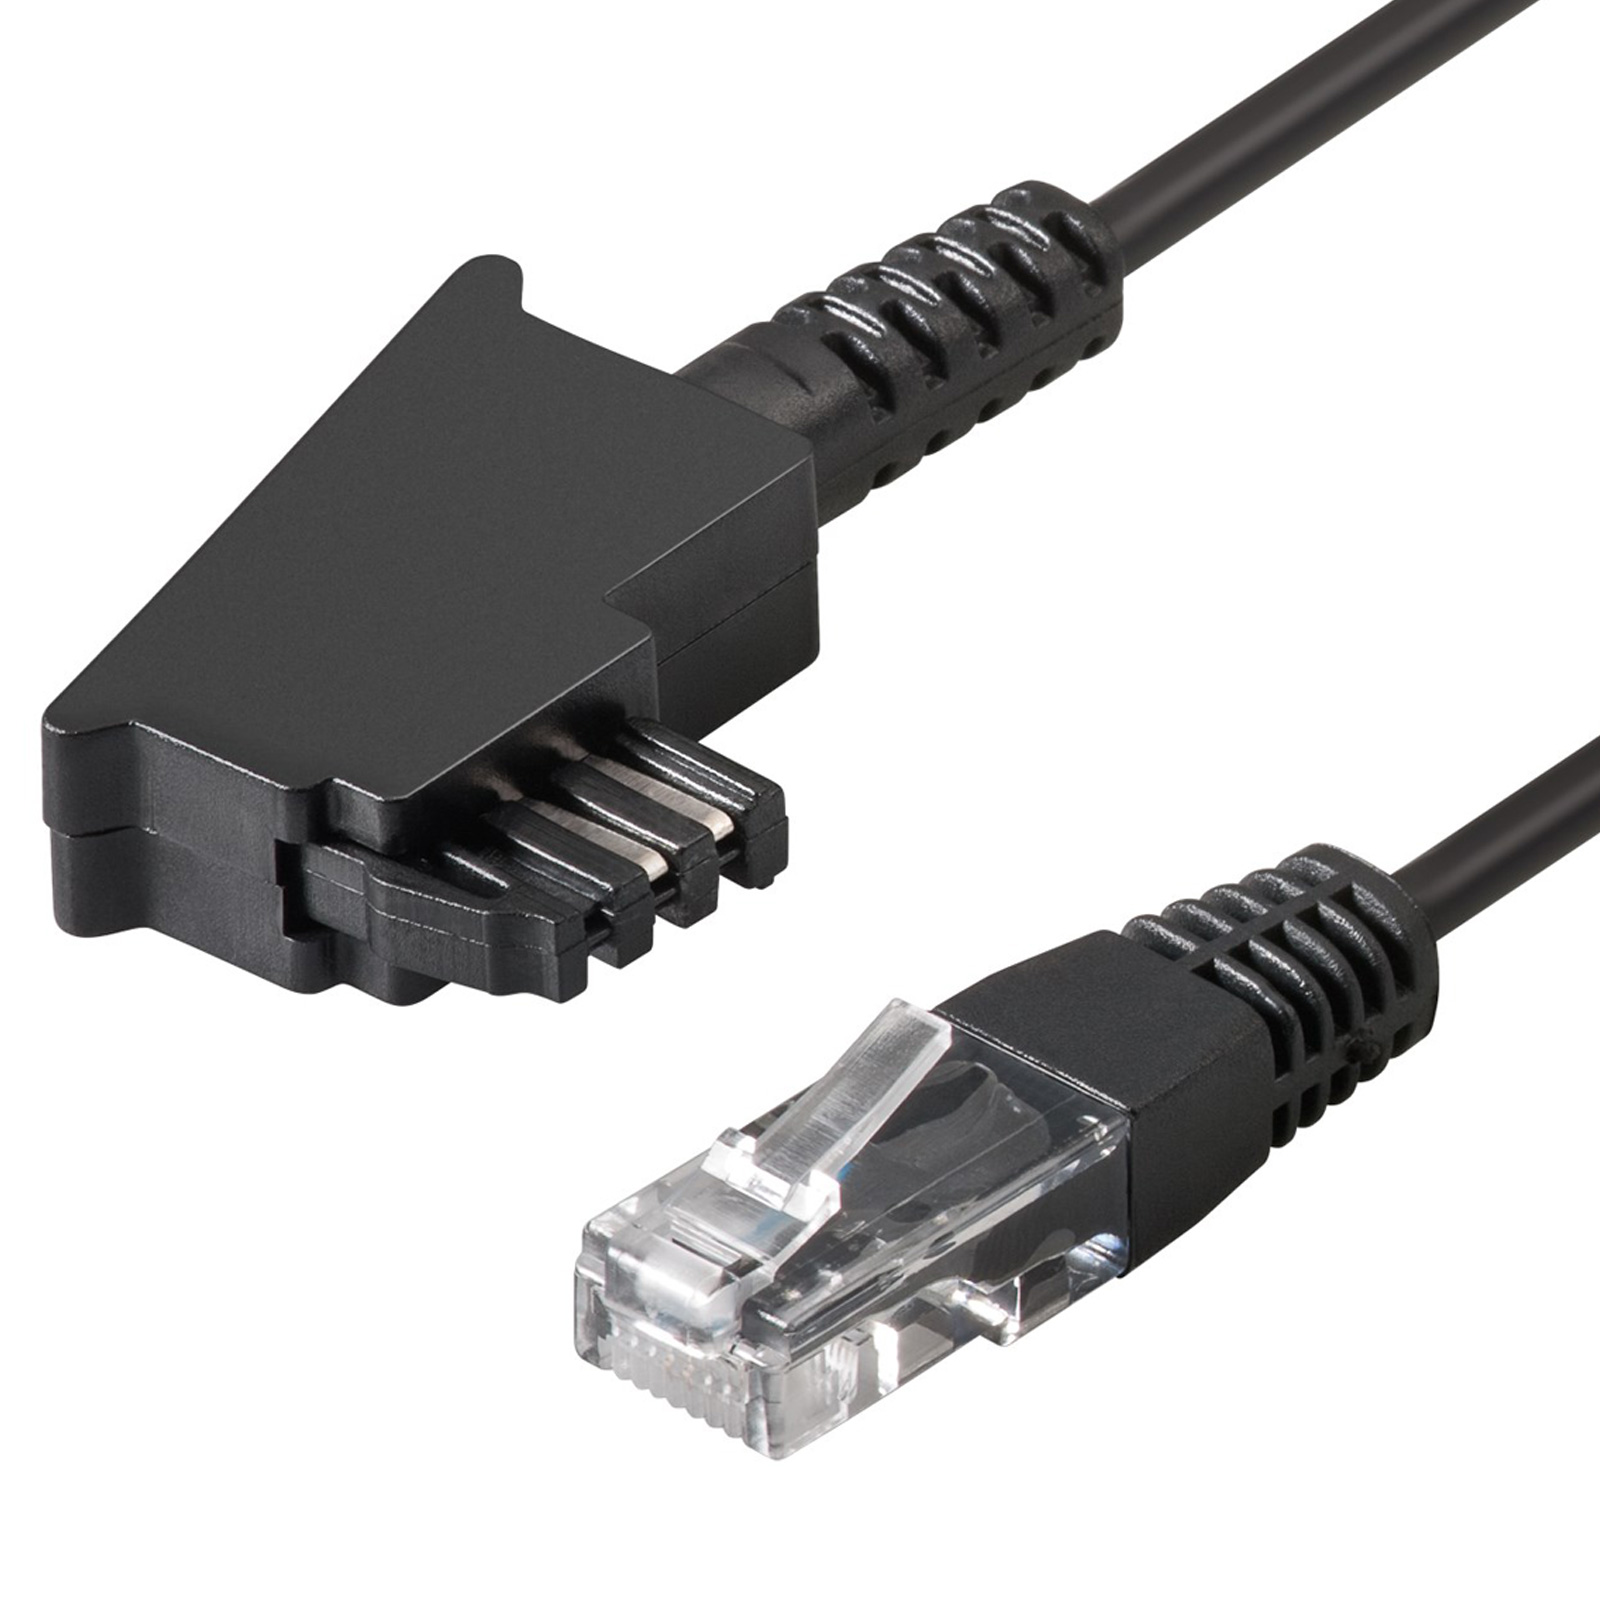 COXBOX 15m VDSL ADSL Kabel für den IP basierten Telekom DSL Anschluss mit galvanischer Signatur TAE RJ45 VoiP Twisted Pairs für effektiven Schutz vor Störeinflüssen Fritzbox Speedport 